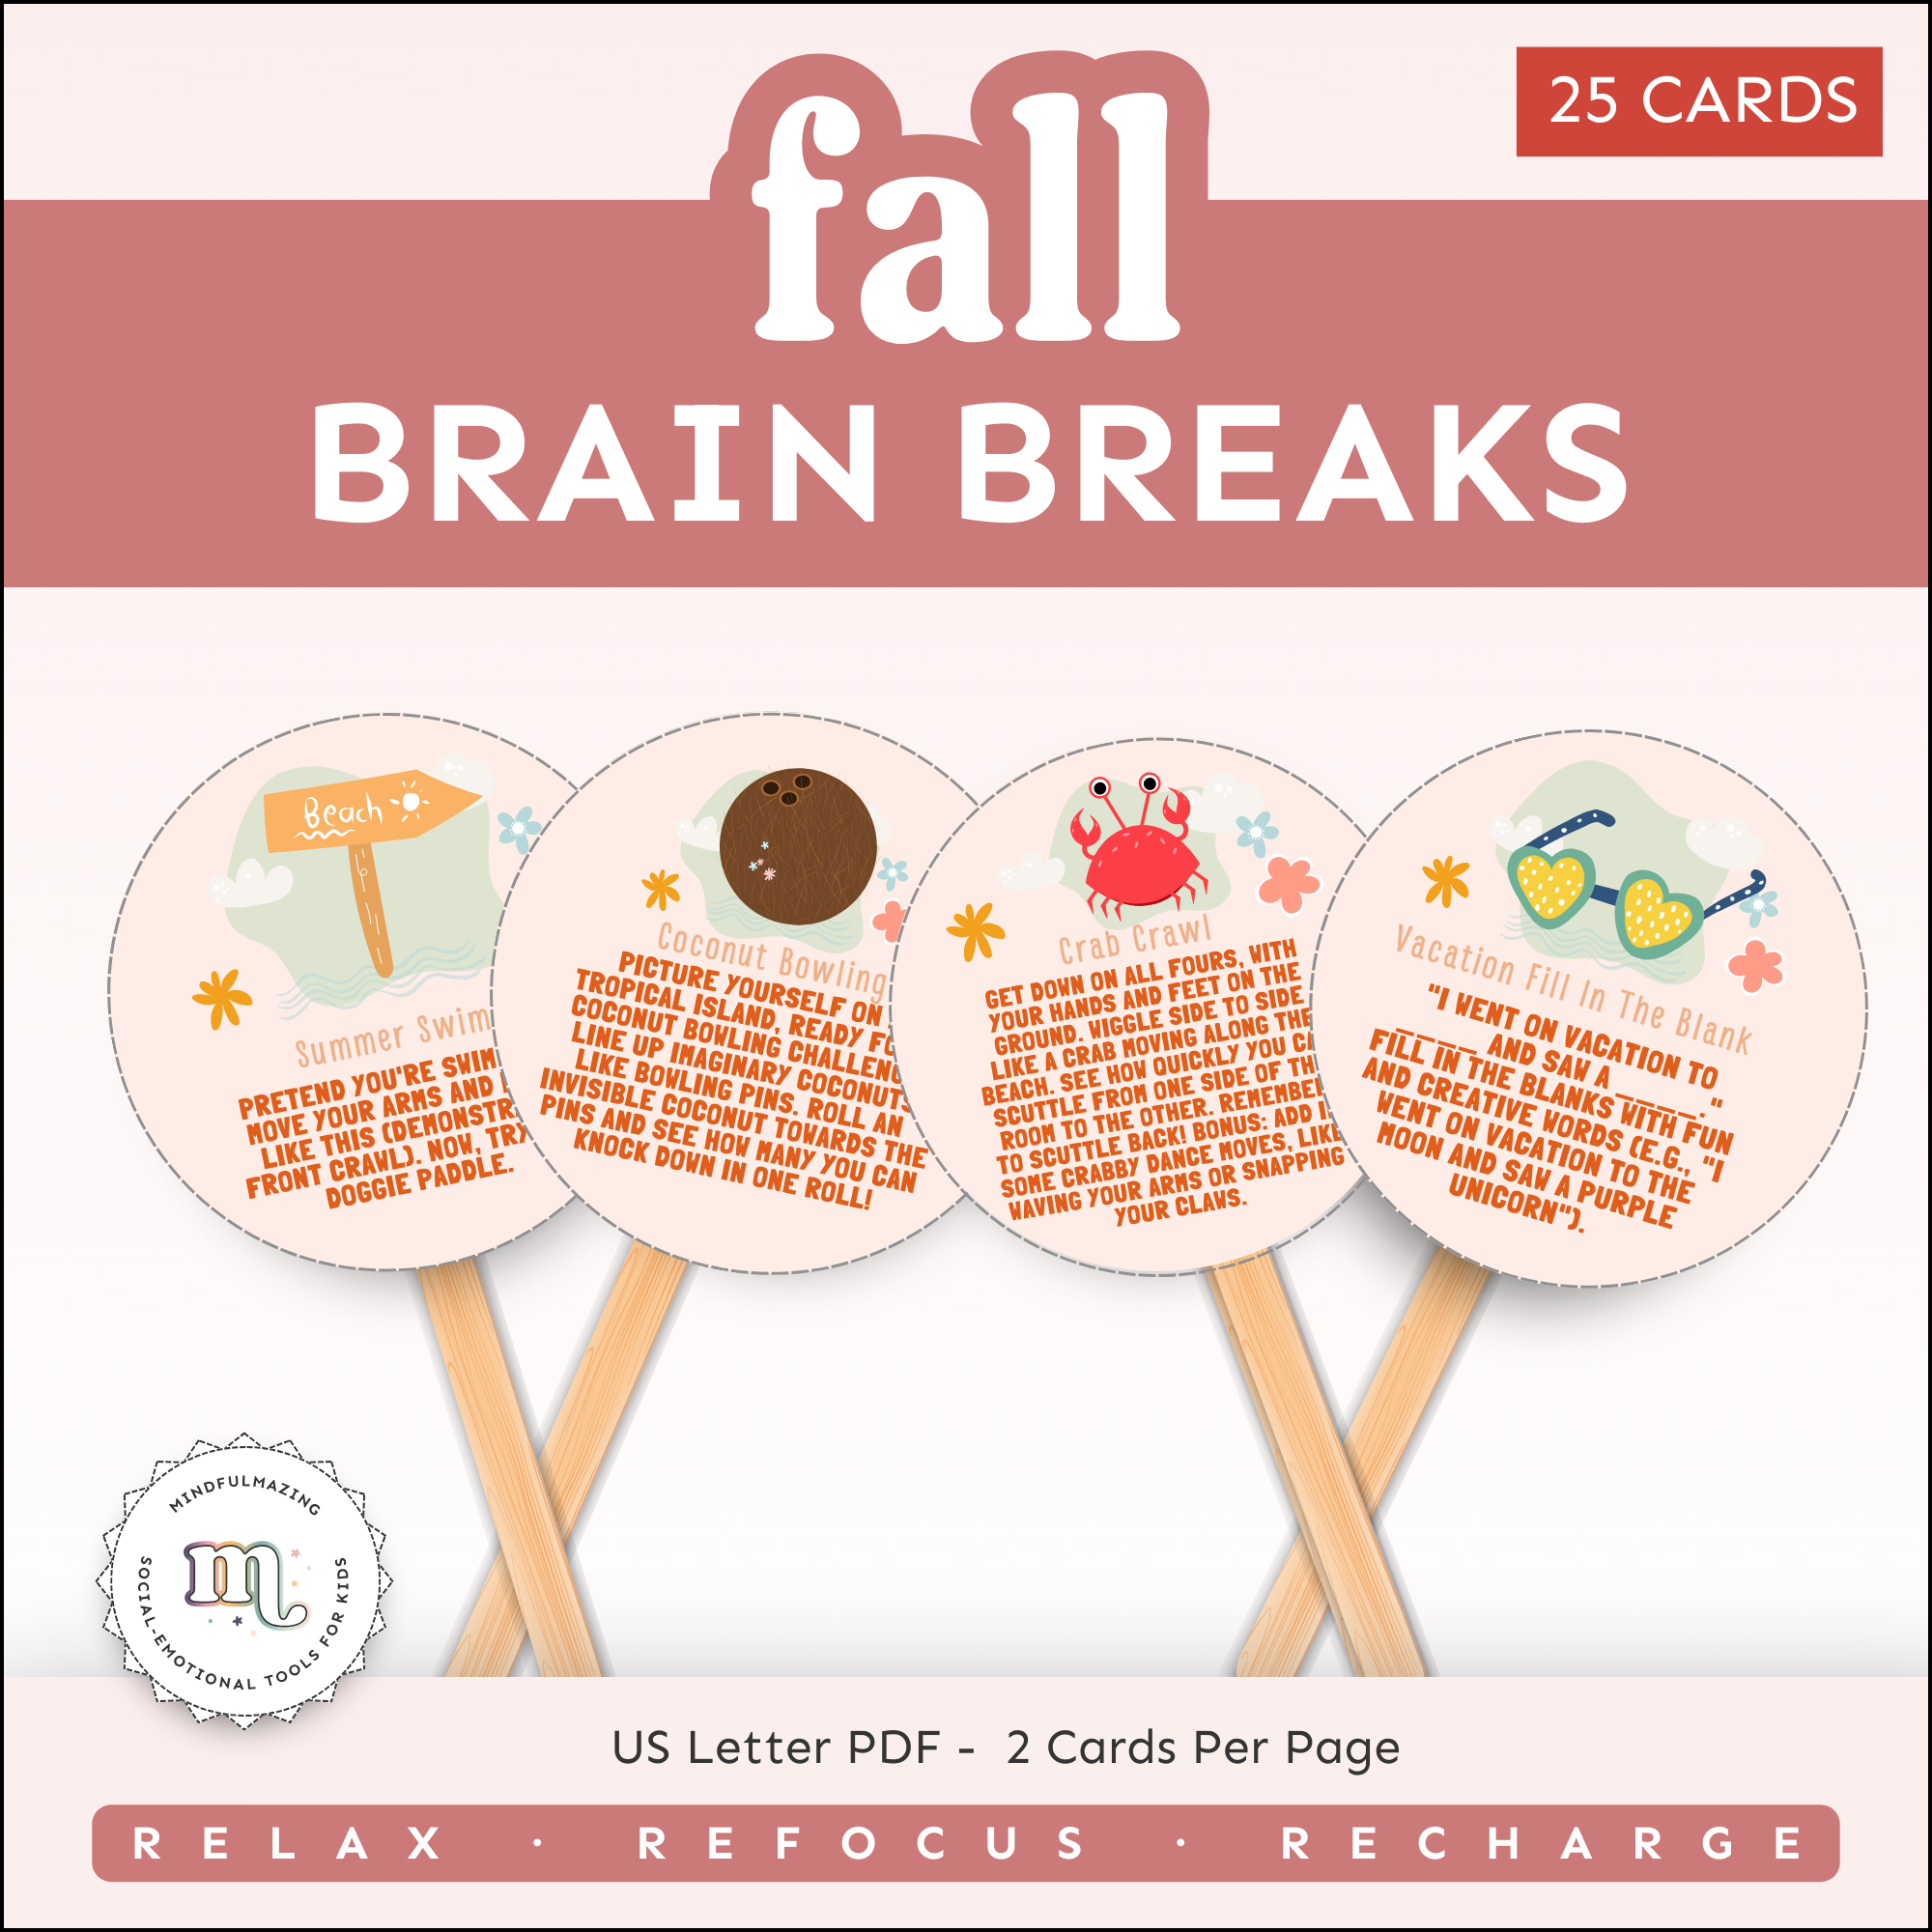 Fall-themed Brain Breaks